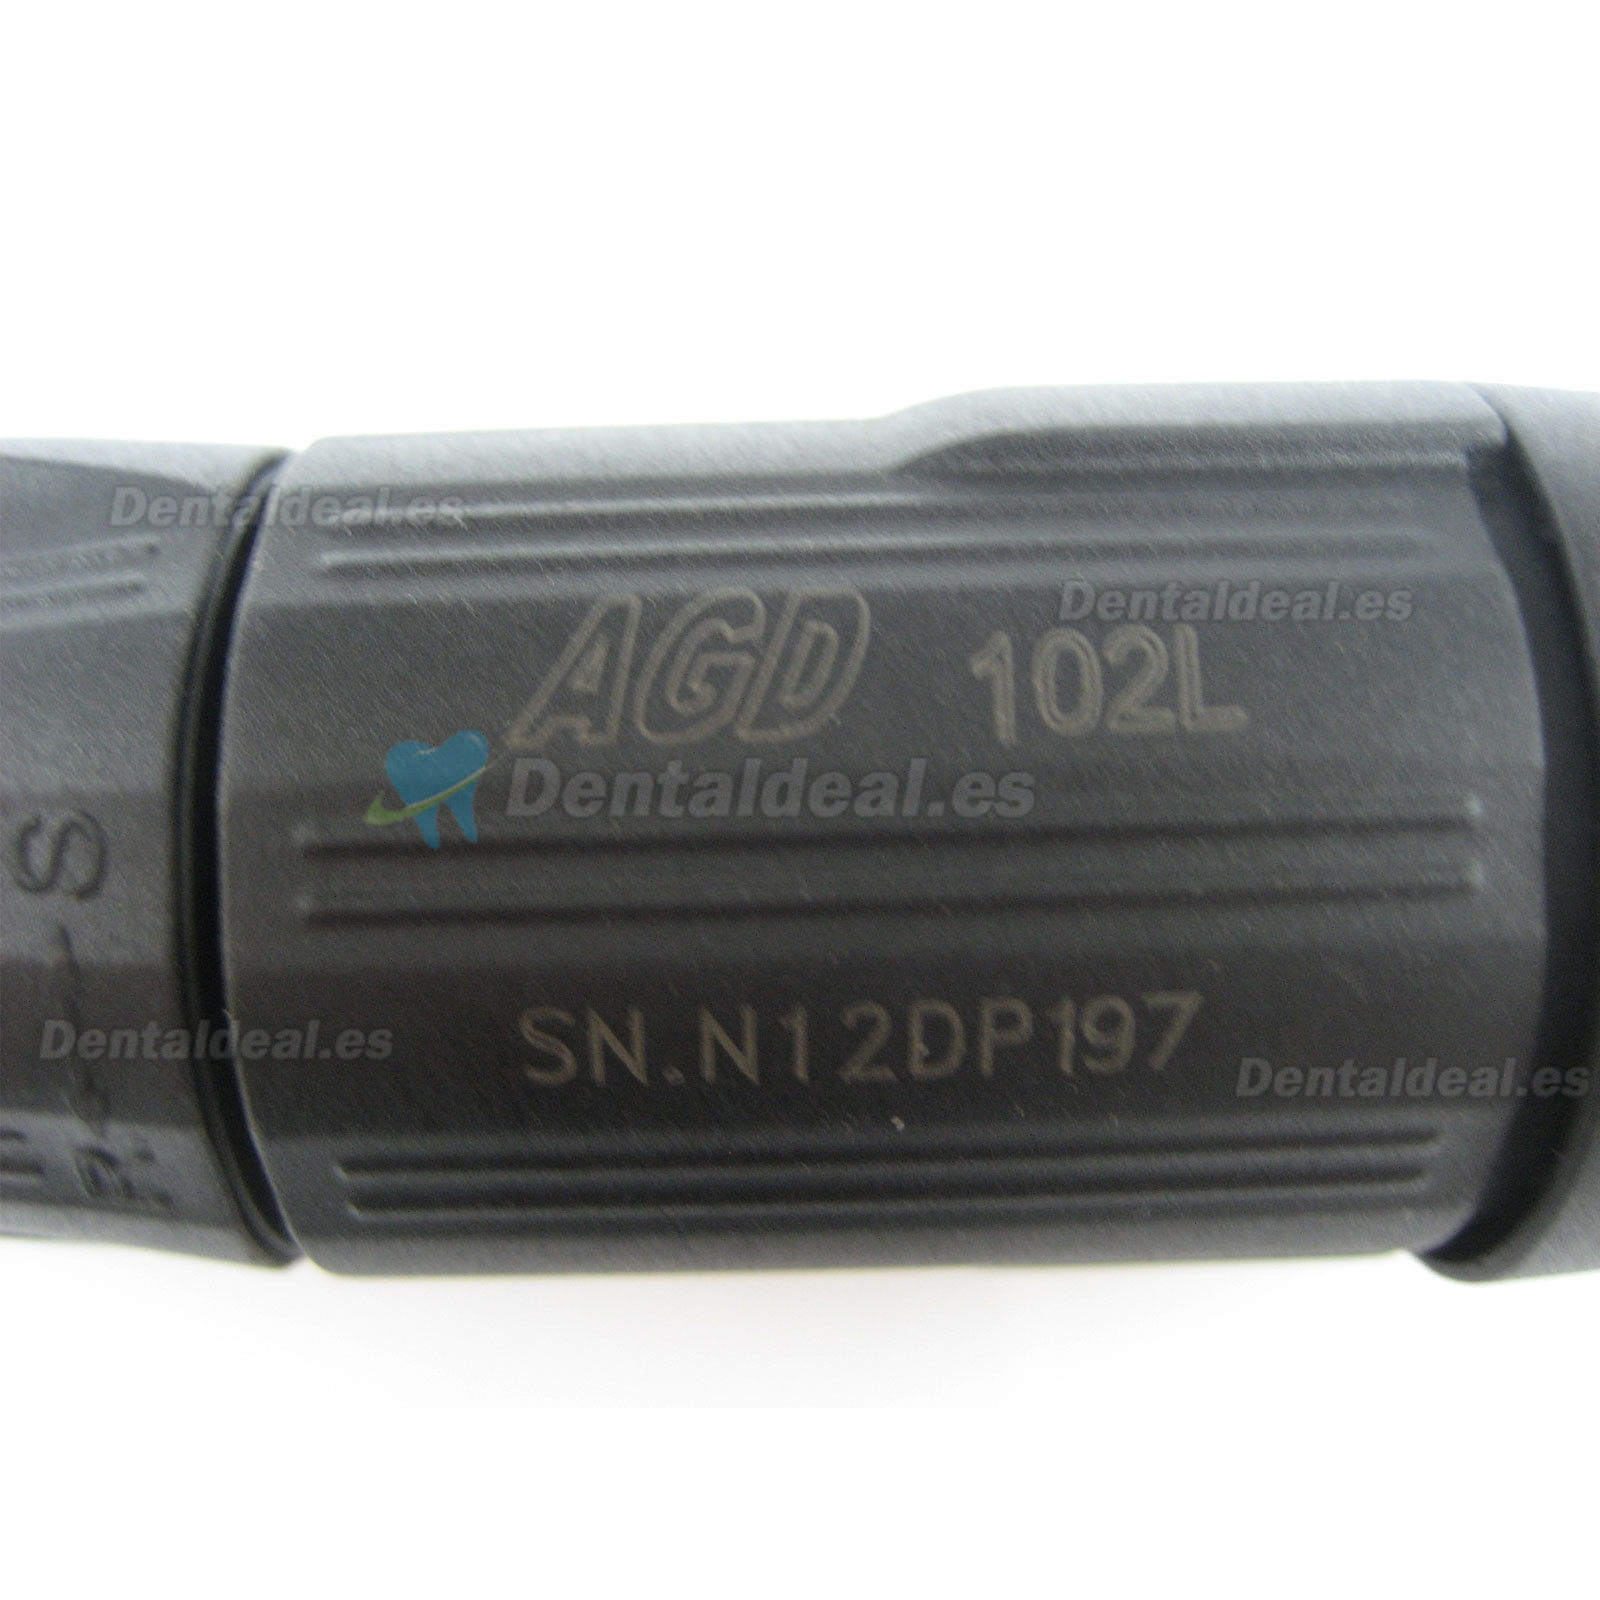 HJ-D-102L Micromotor Dental Pieza de Mano 35000 RPM